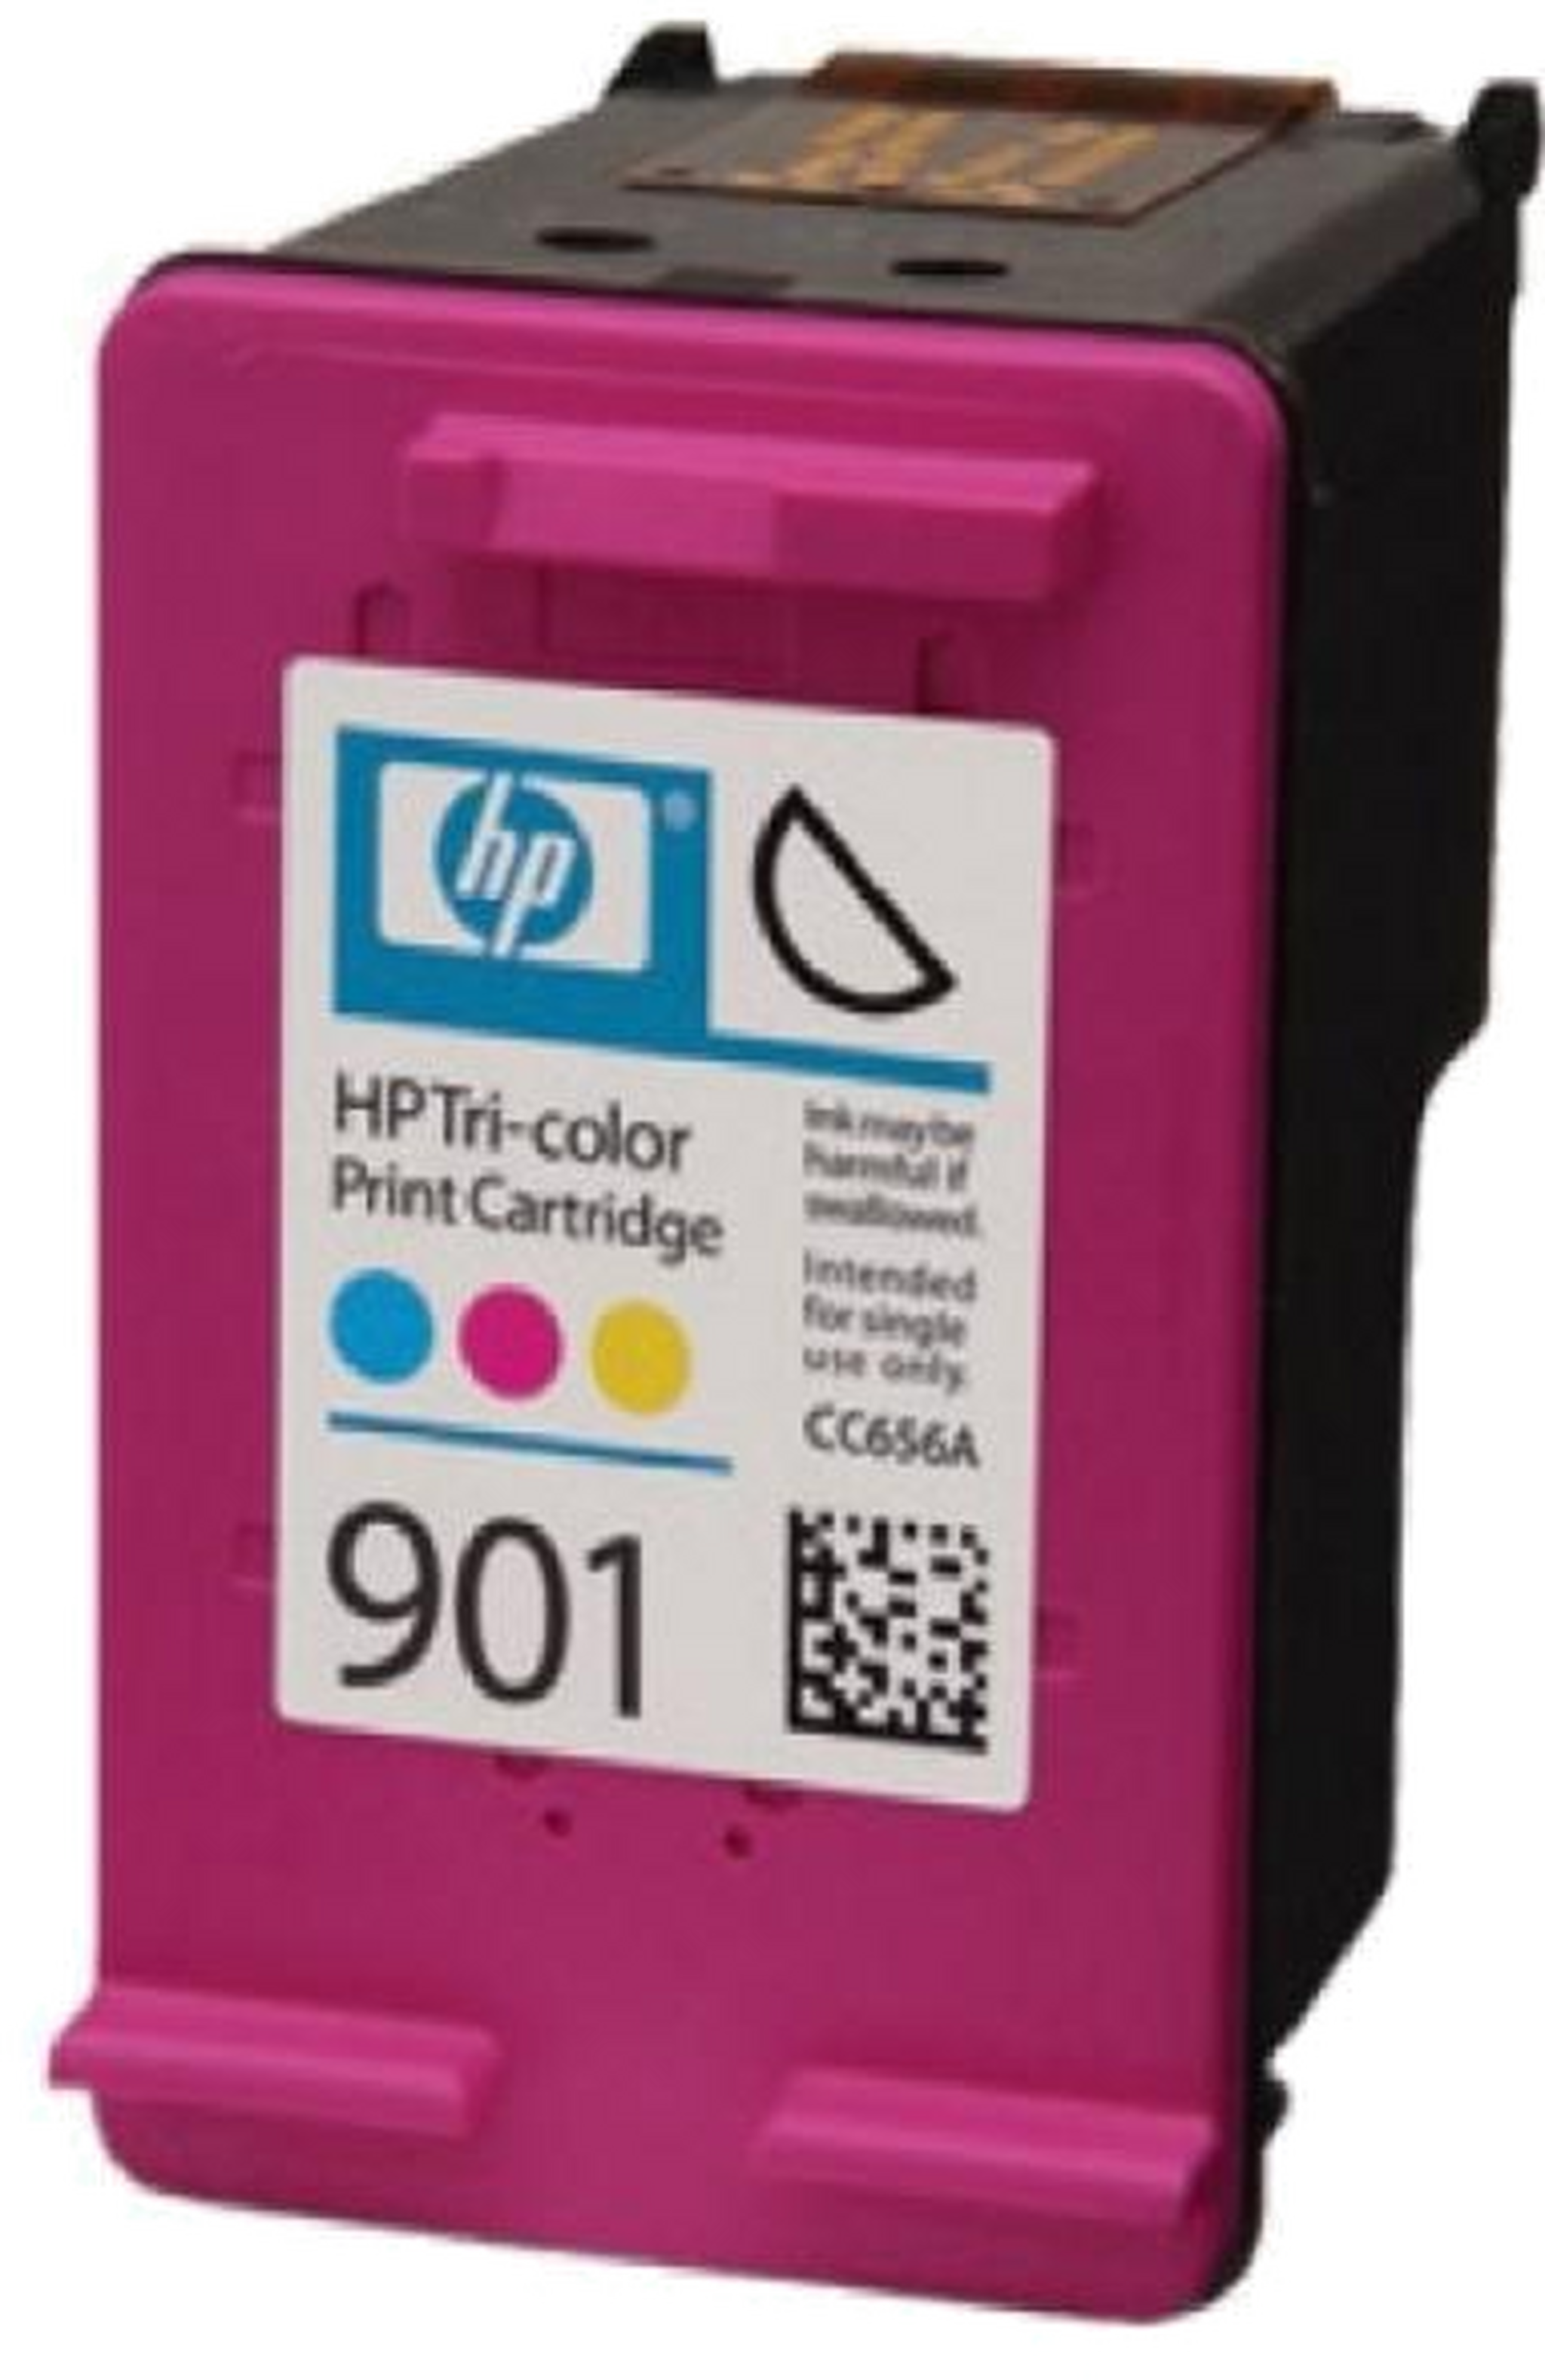 HP Ink 901 Tri Color Ink